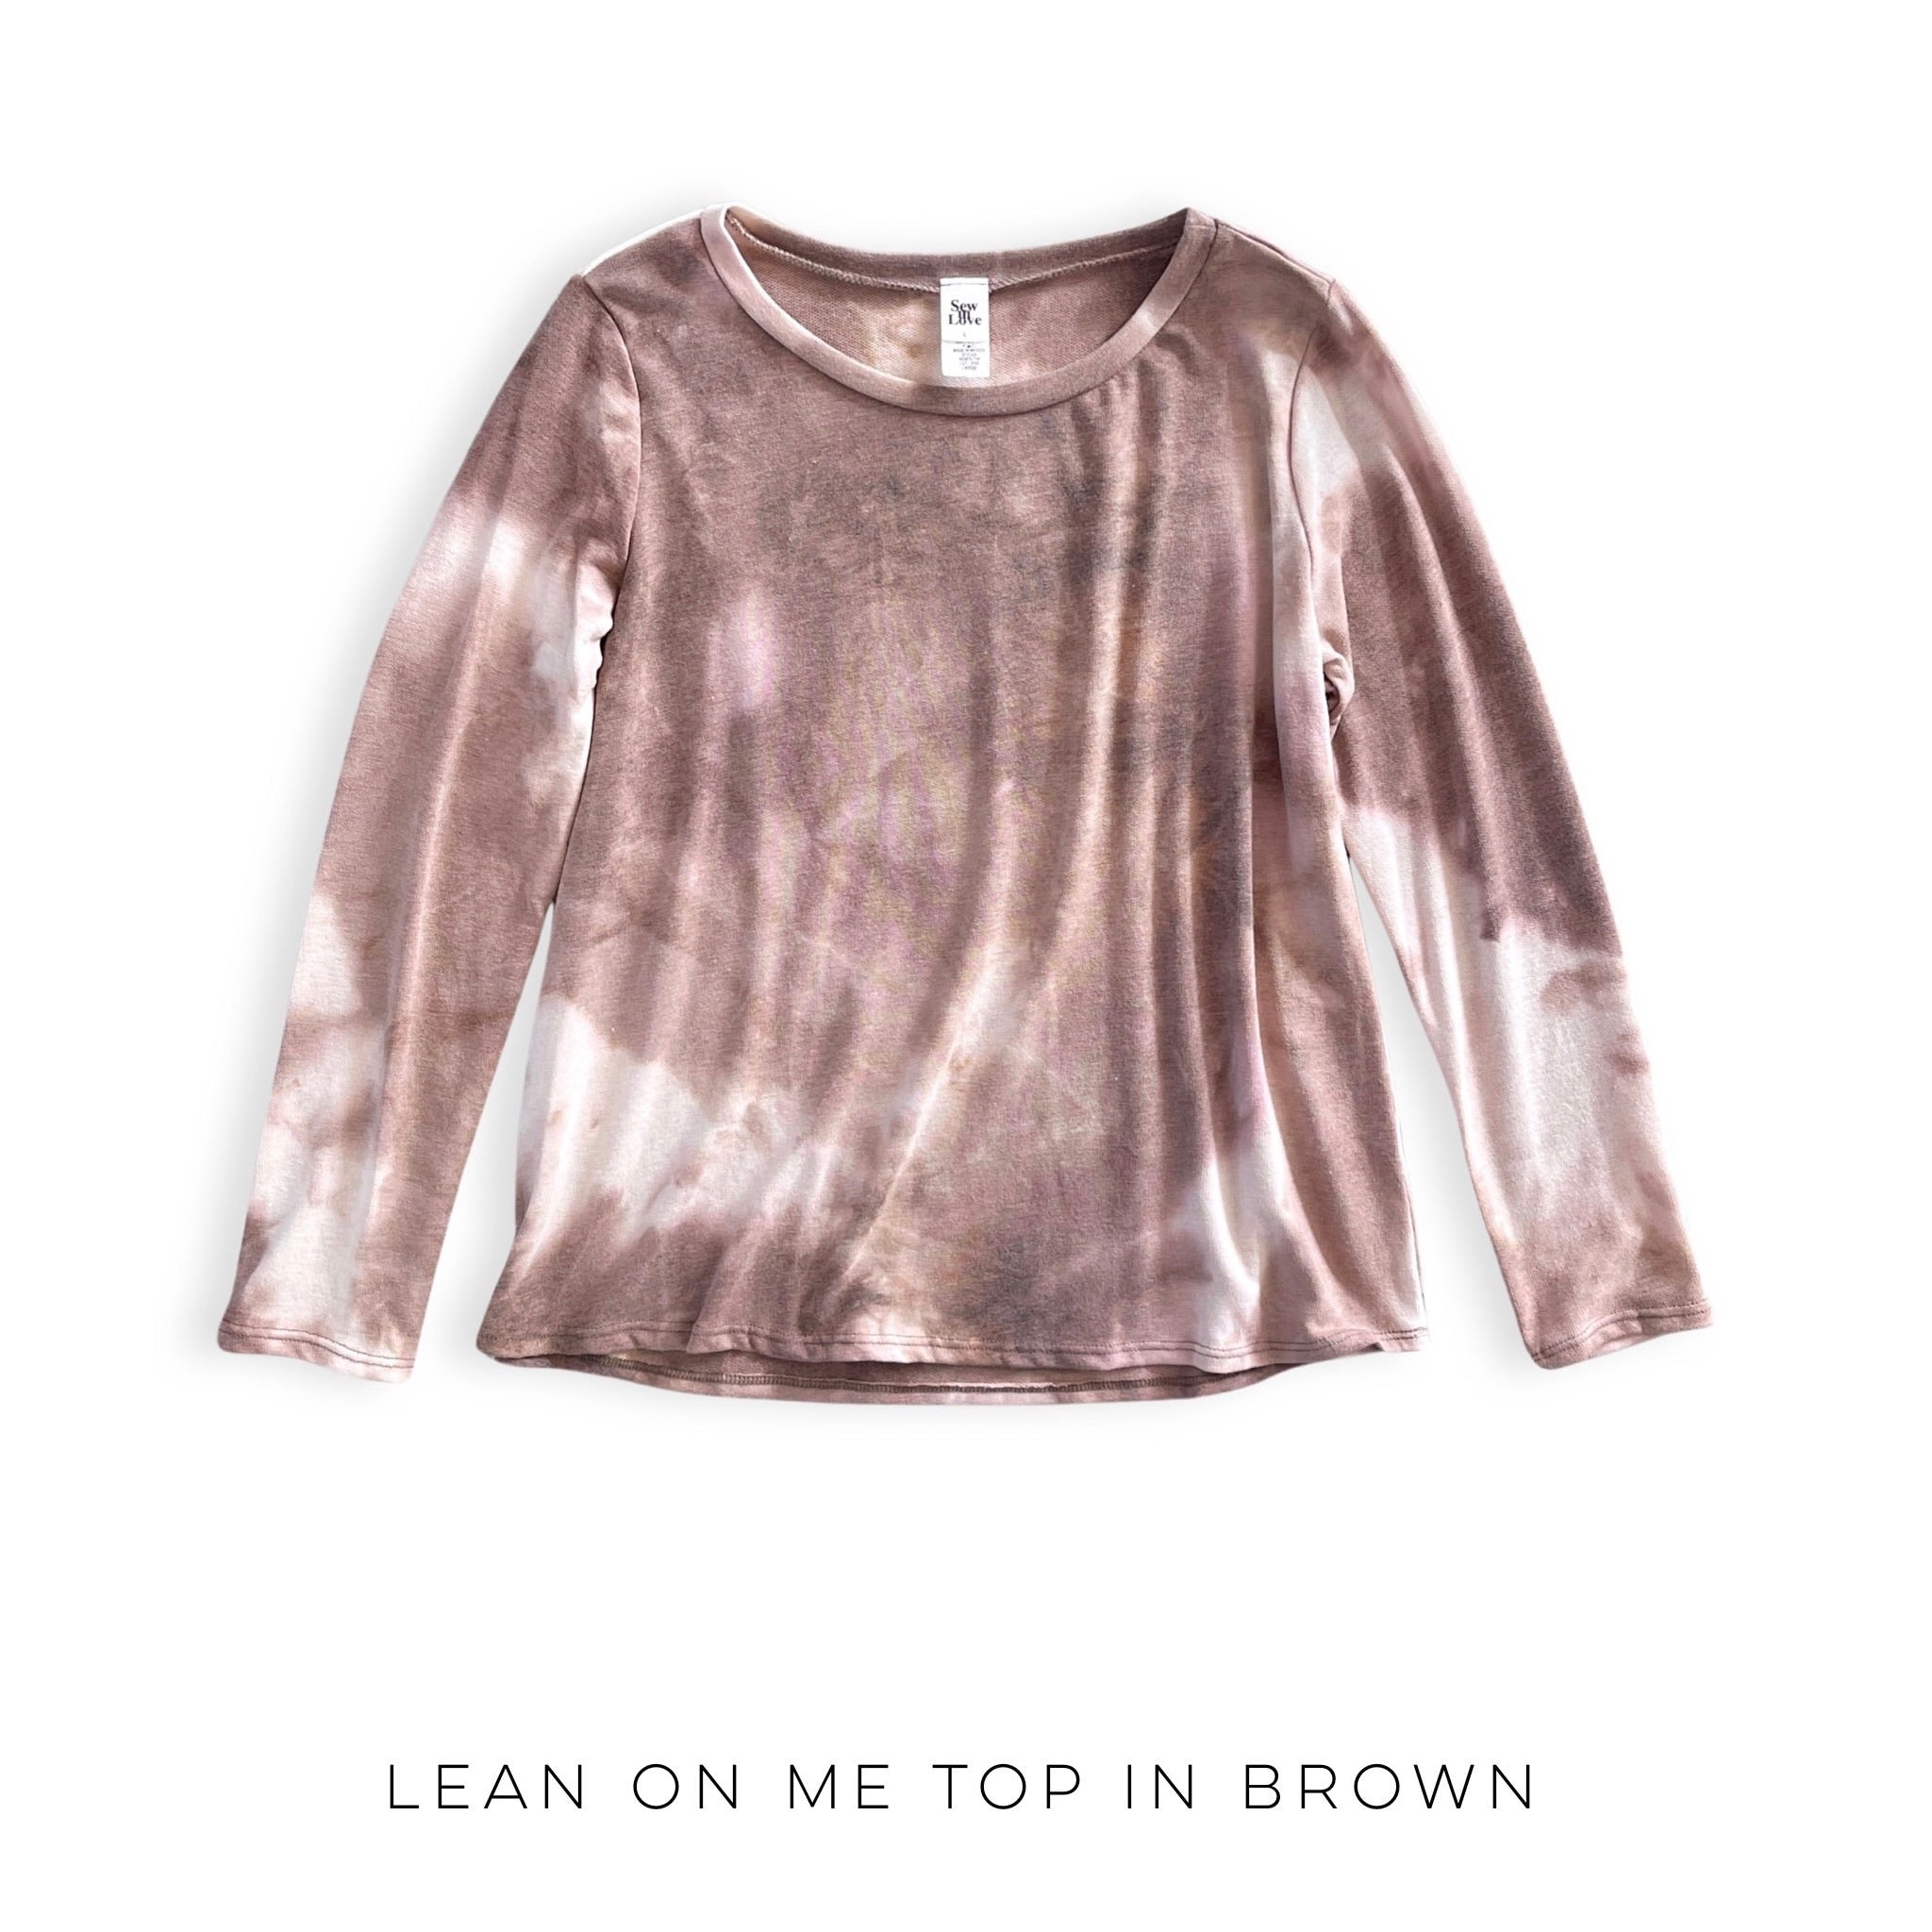 Lean on Me Top in Brown